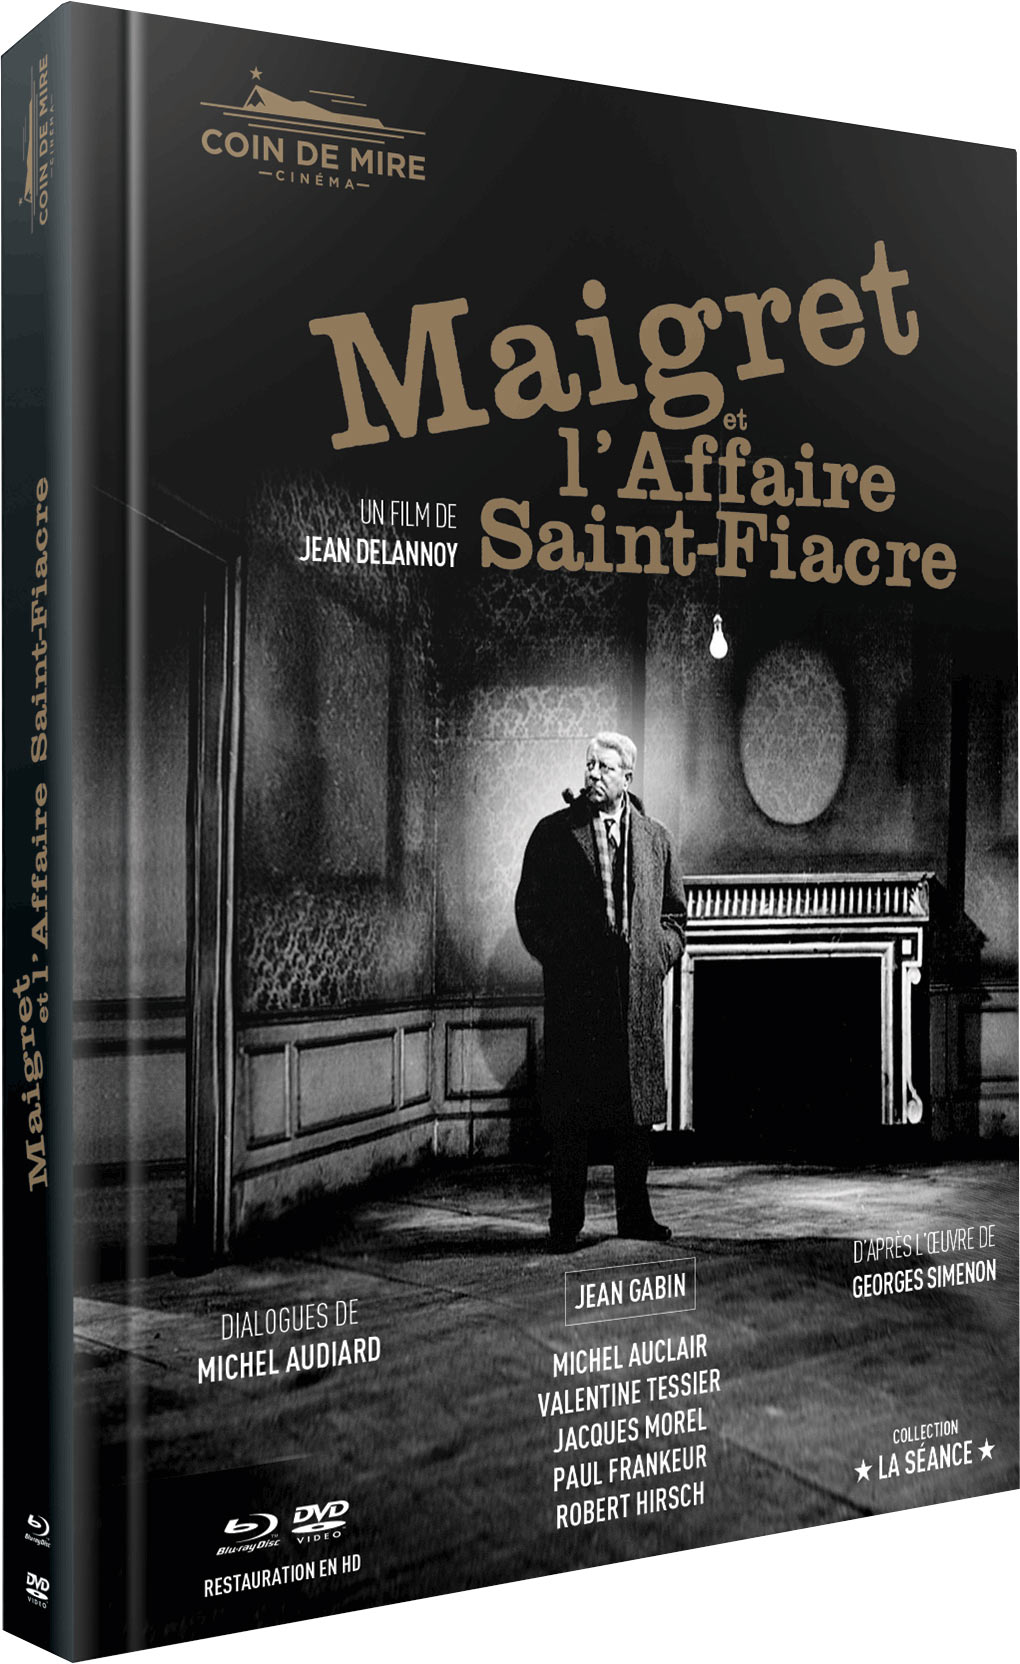 Maigret et l'affaire Saint-Fiacre - Édition La Séance Prestige - Mediabook Blu-ray + DVD + Goodies